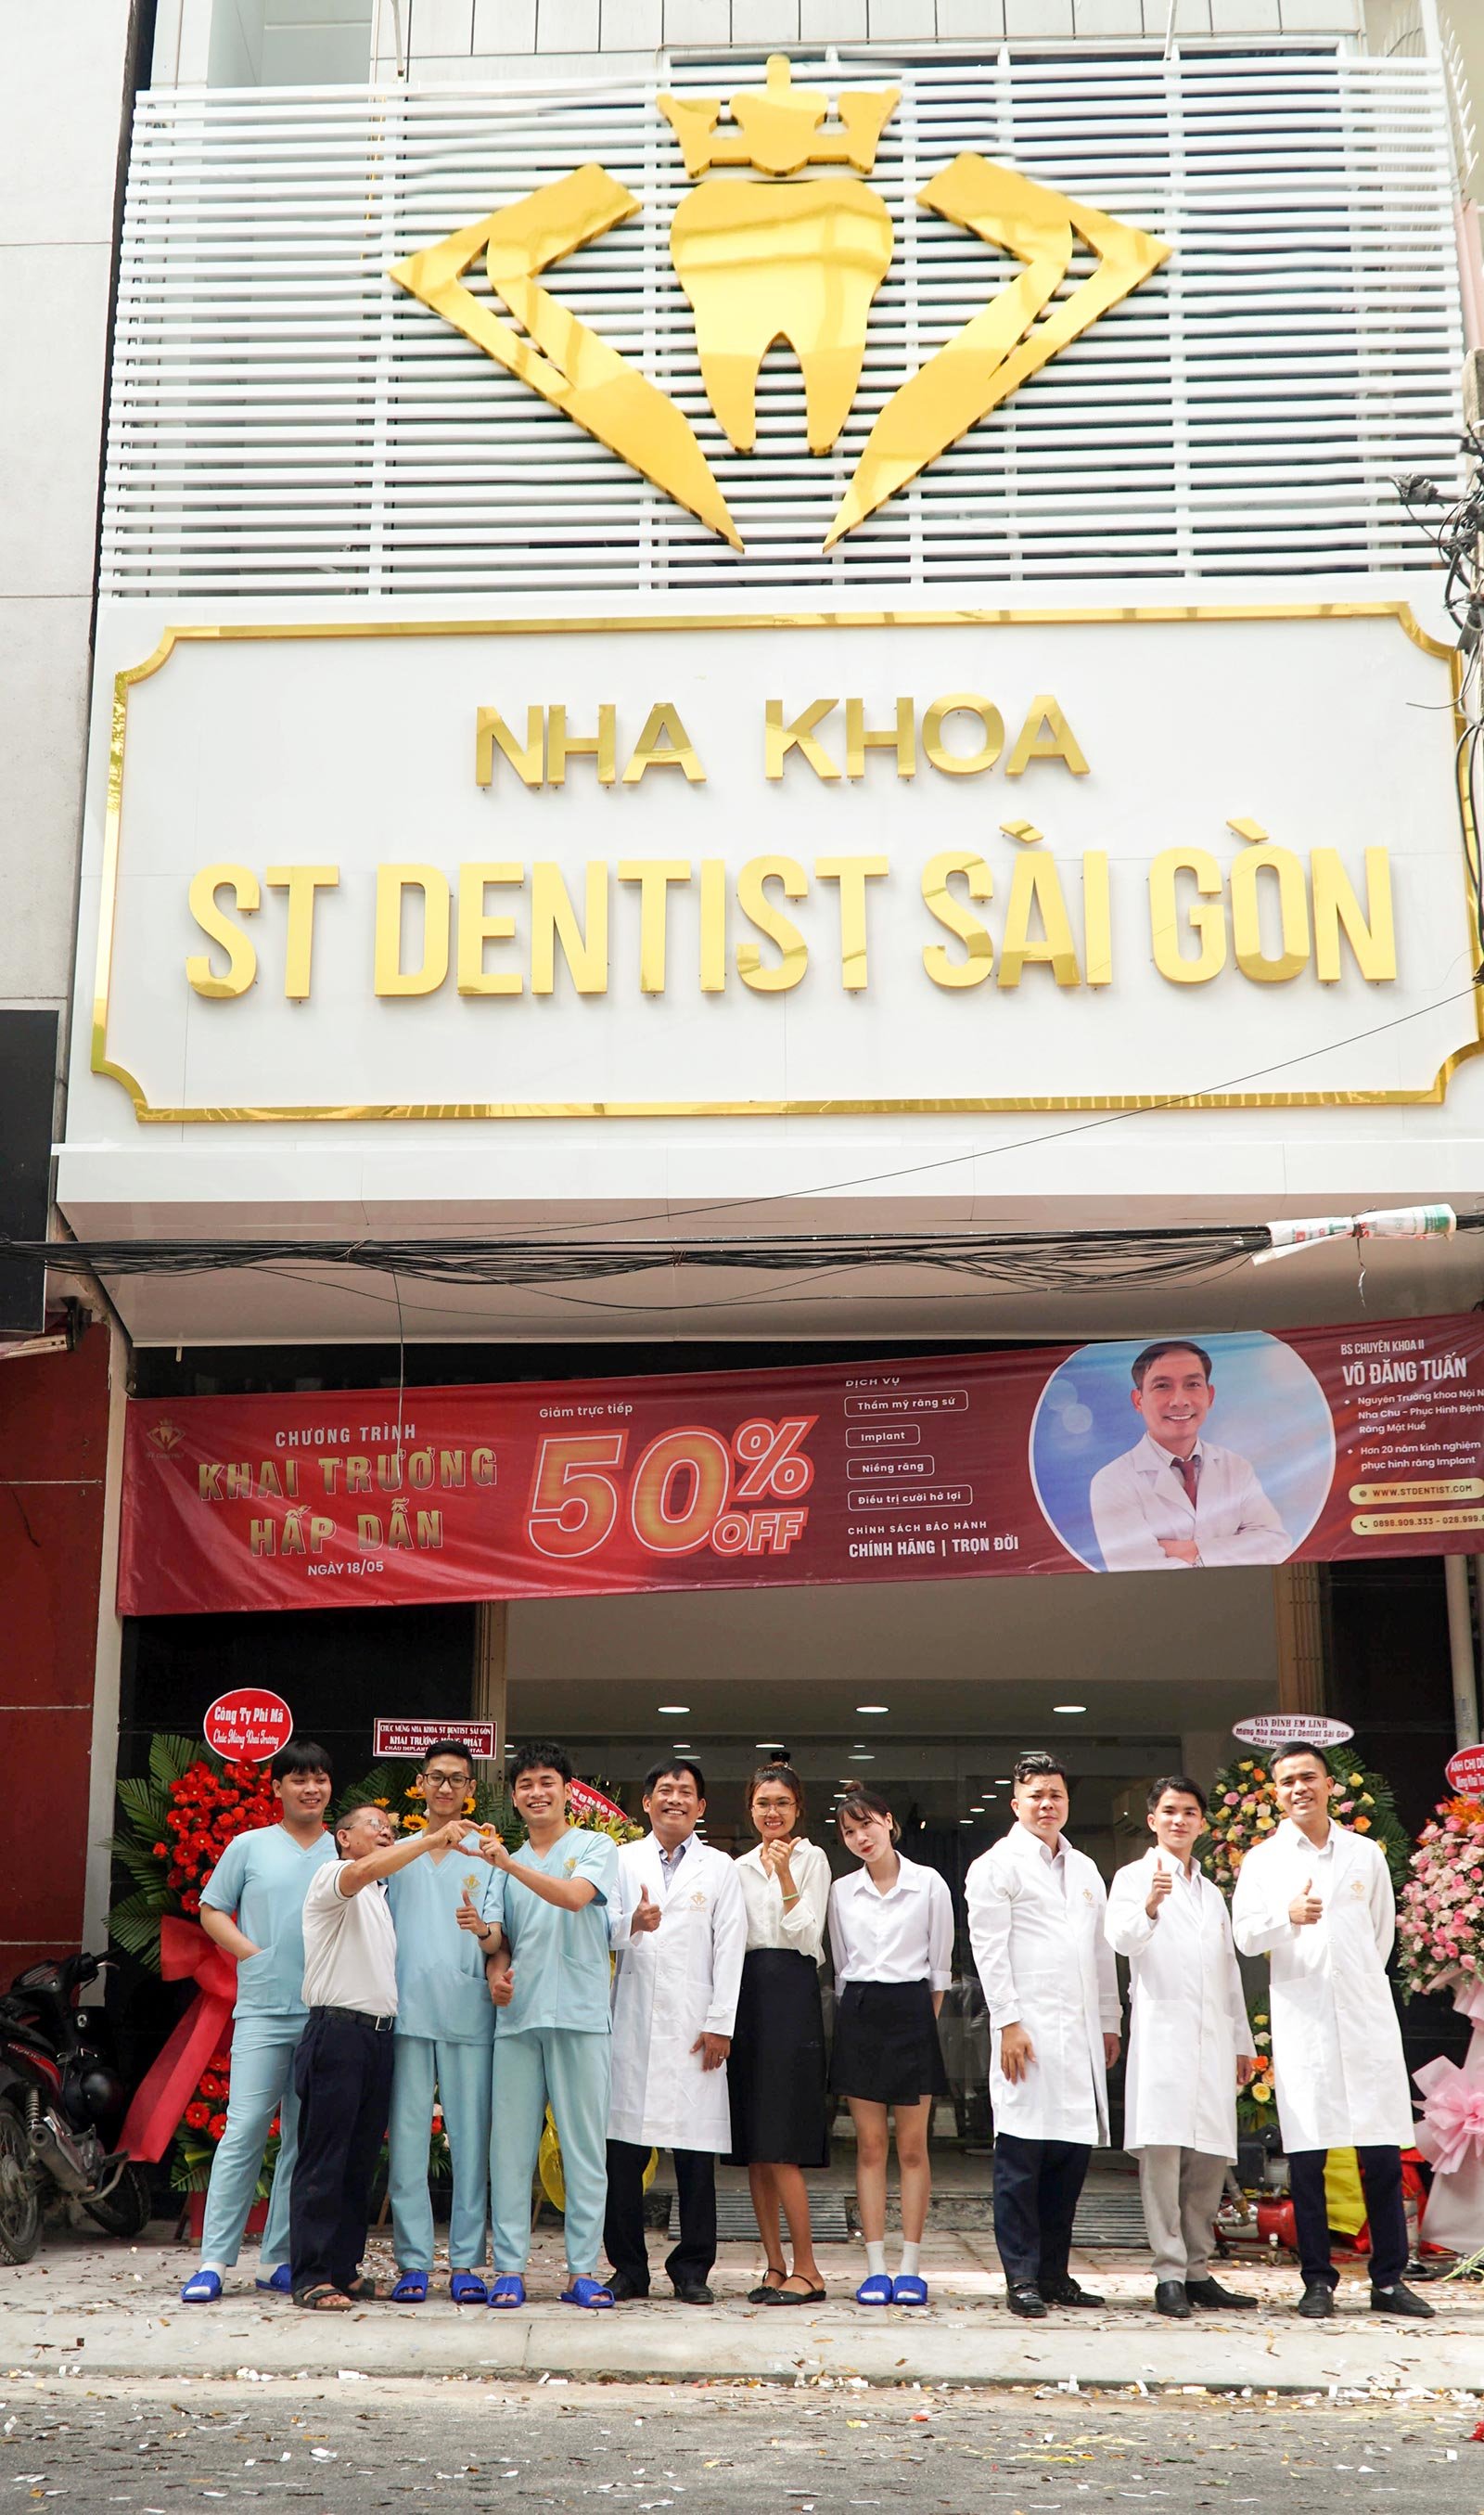 Hệ thống nha khoa đạt chuẩn quốc tế: Nha khoa thẩm mỹ ST Dentist - Chi nhánh Nha Trang